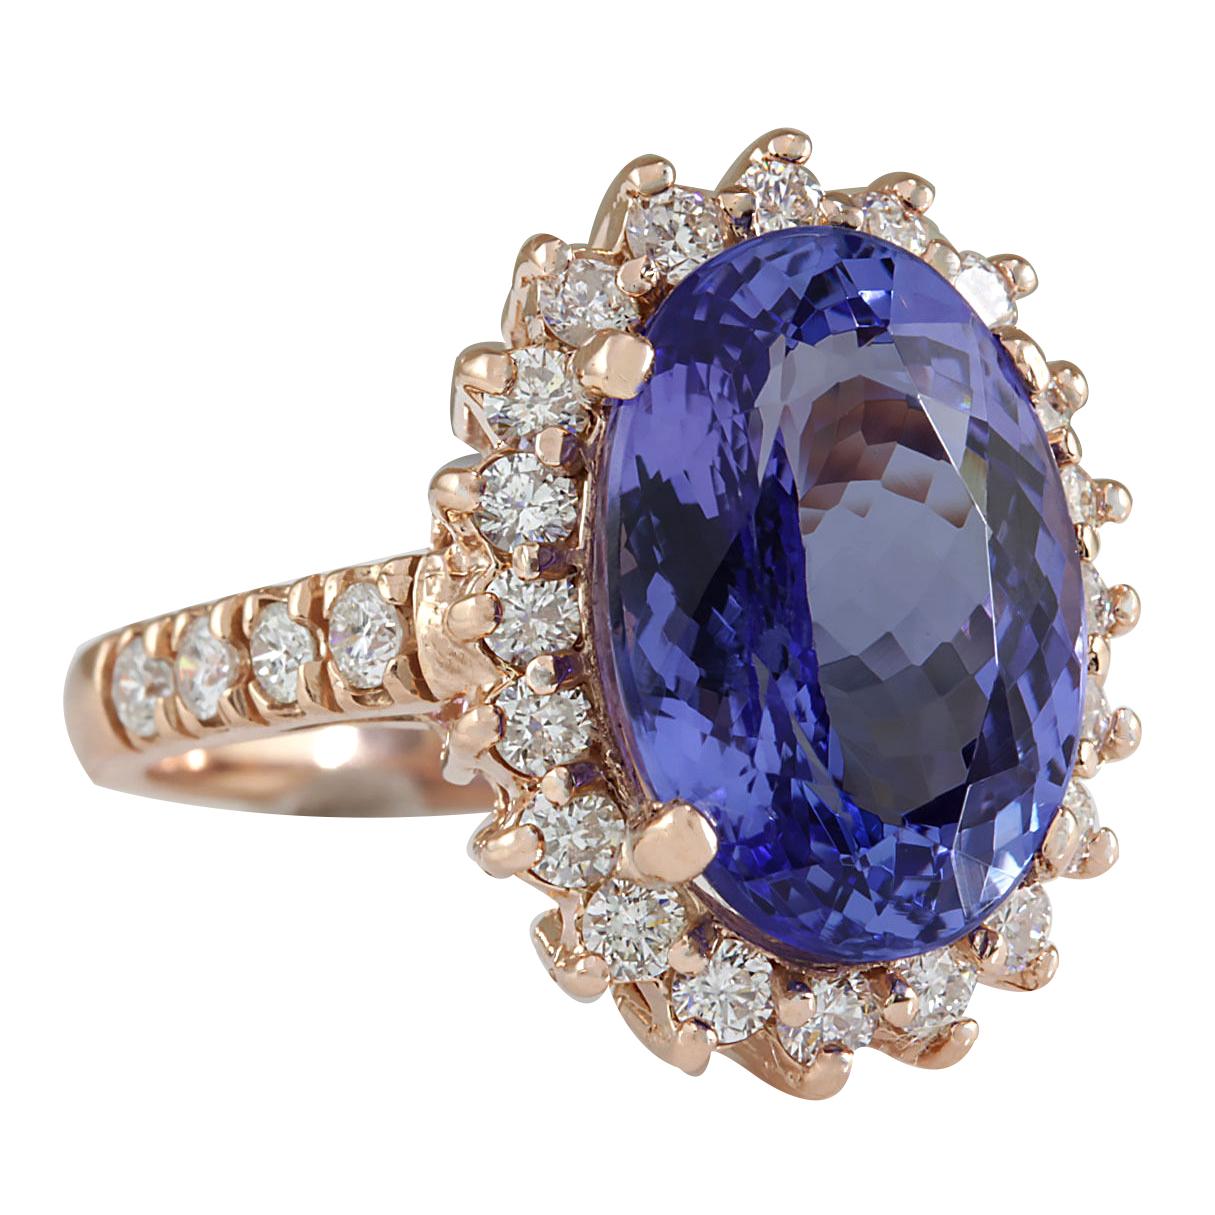 7.66 Carat Tanzanite 14 Karat Rose Gold Diamond Ring
Stamped: 14K Rose Gold
Total Ring Weight: 6.8 Grams
Total  Tanzanite Weight is 6.66 Carat (Measures: 14.00x10.00 mm)
Color: Blue
Total  Diamond Weight is 1.00 Carat
Color: F-G, Clarity: